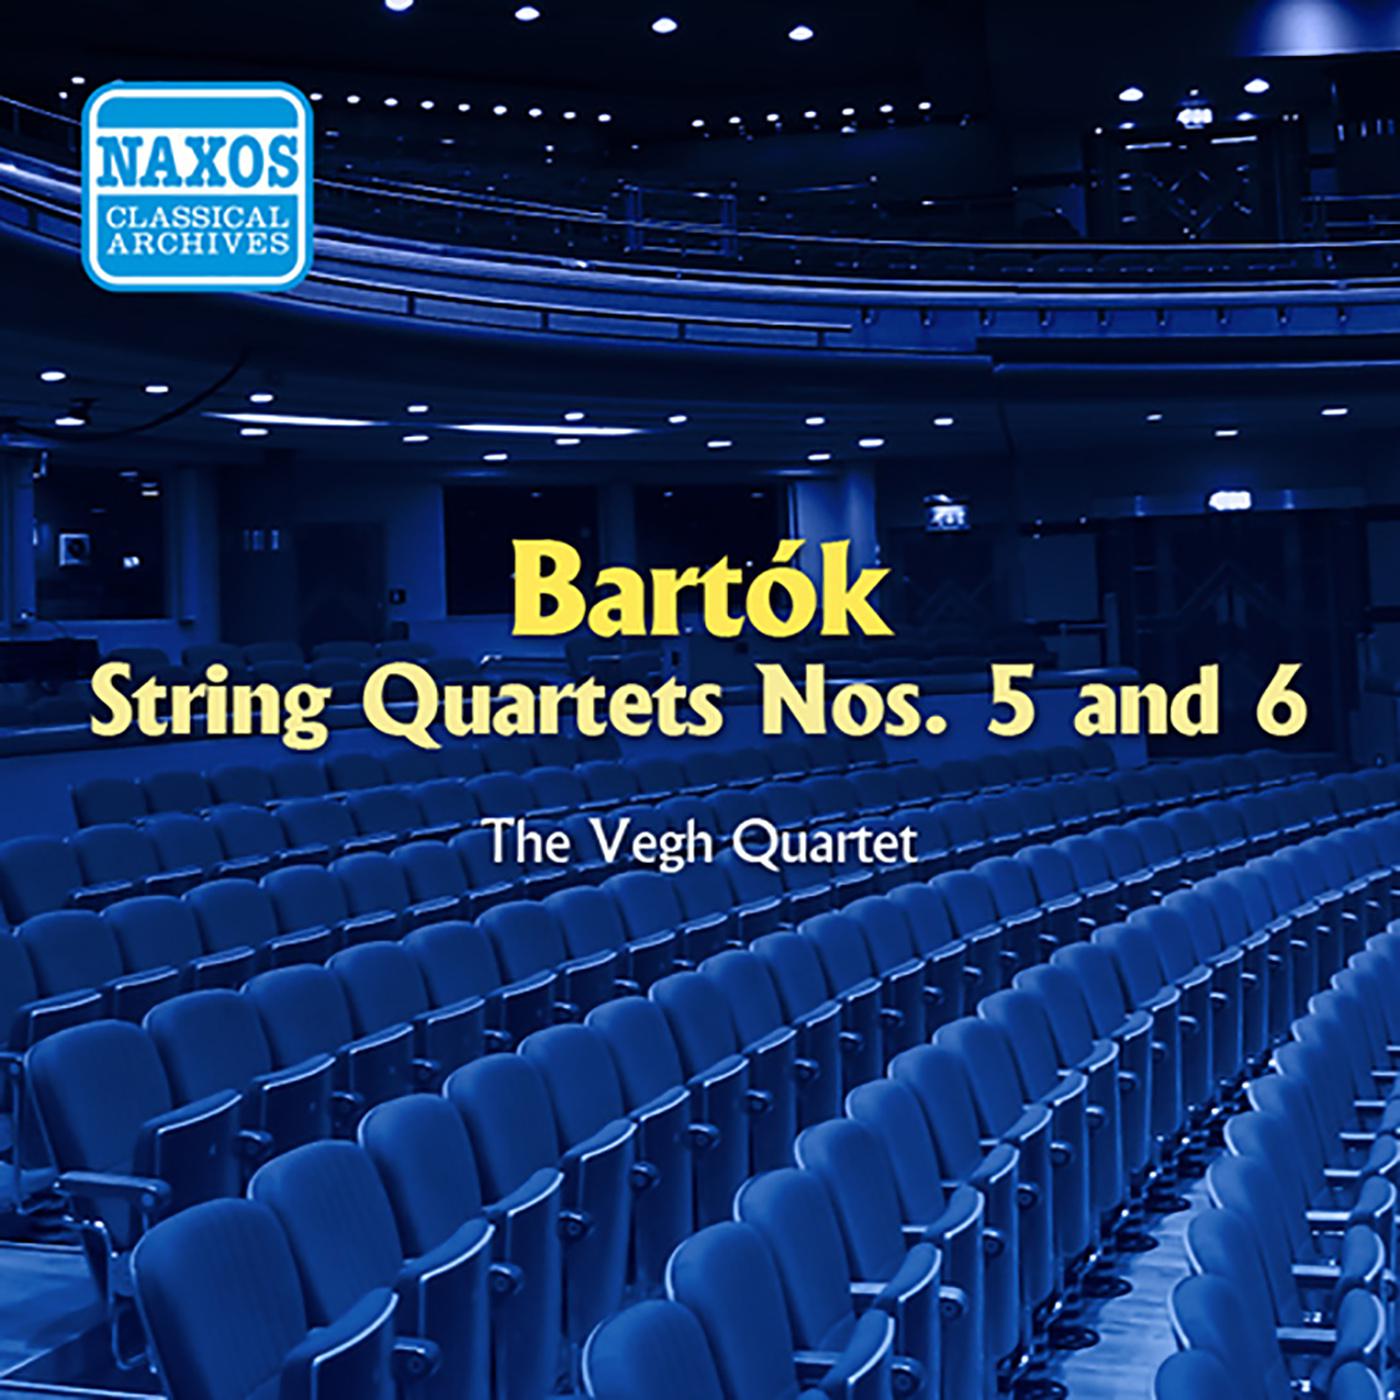 BARTOK: String Quartets Nos. 5 and 6 (Vegh Quartet) (1954)